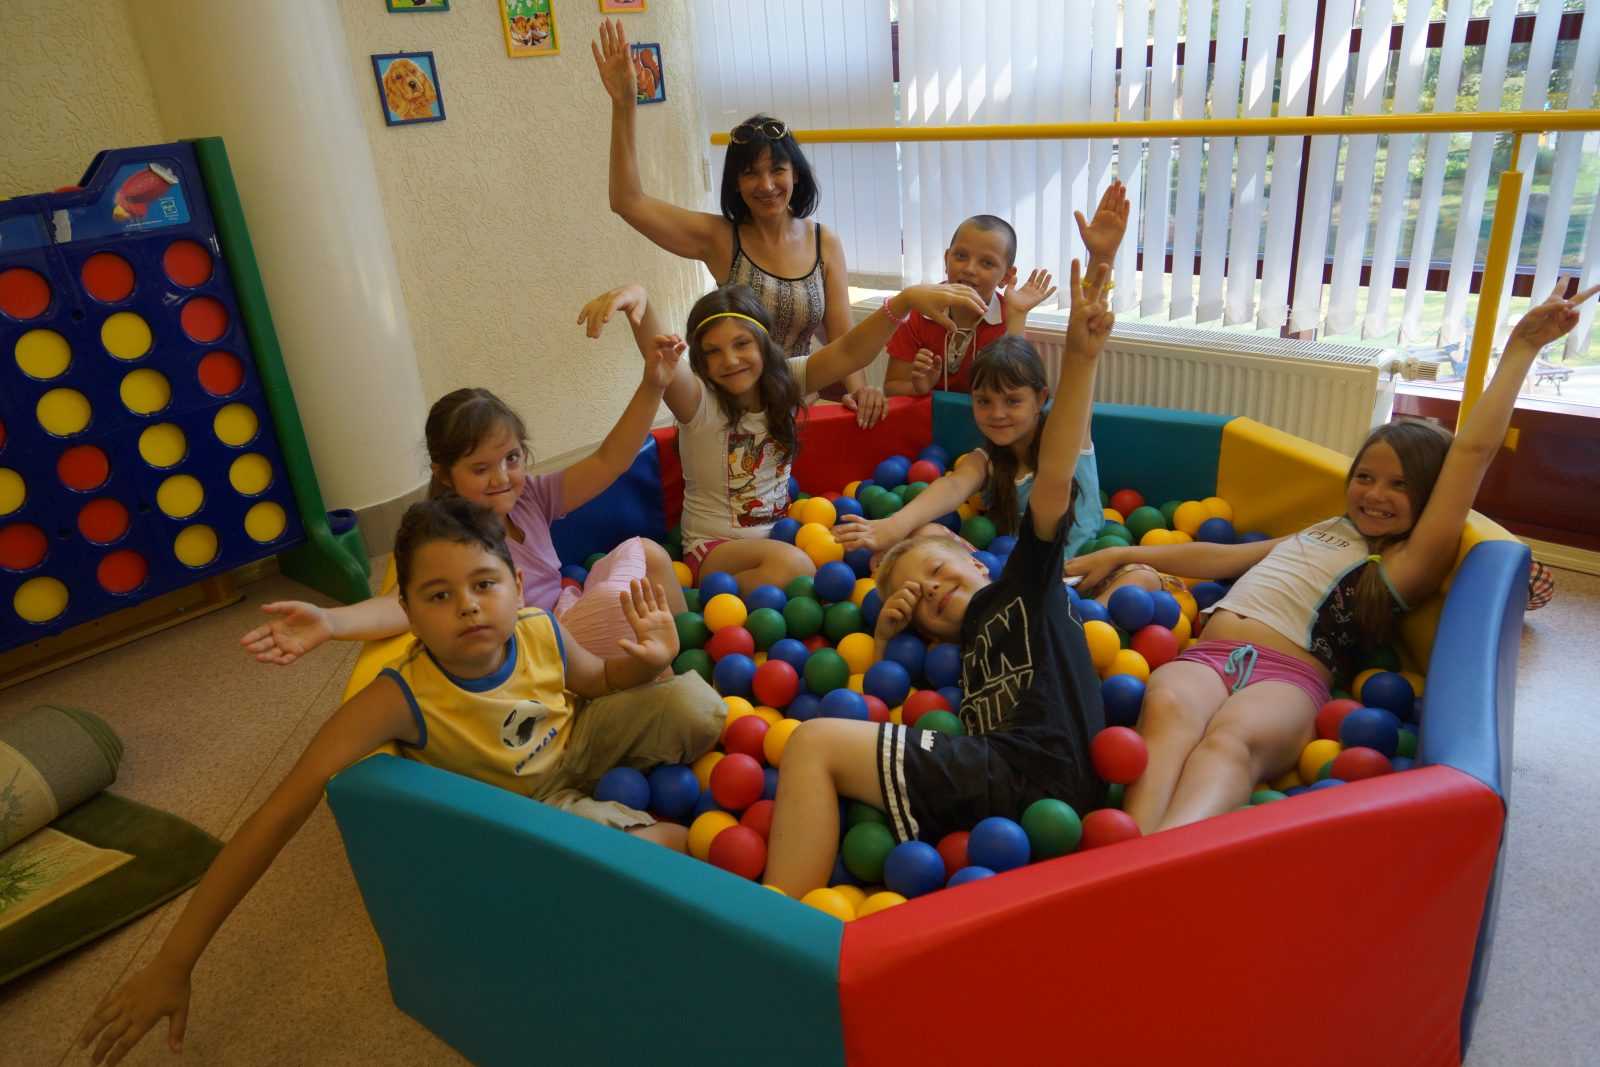 Дополнительные услуги, оказываемые моим клиентом, детским центром “Надежда” (Беларусь)